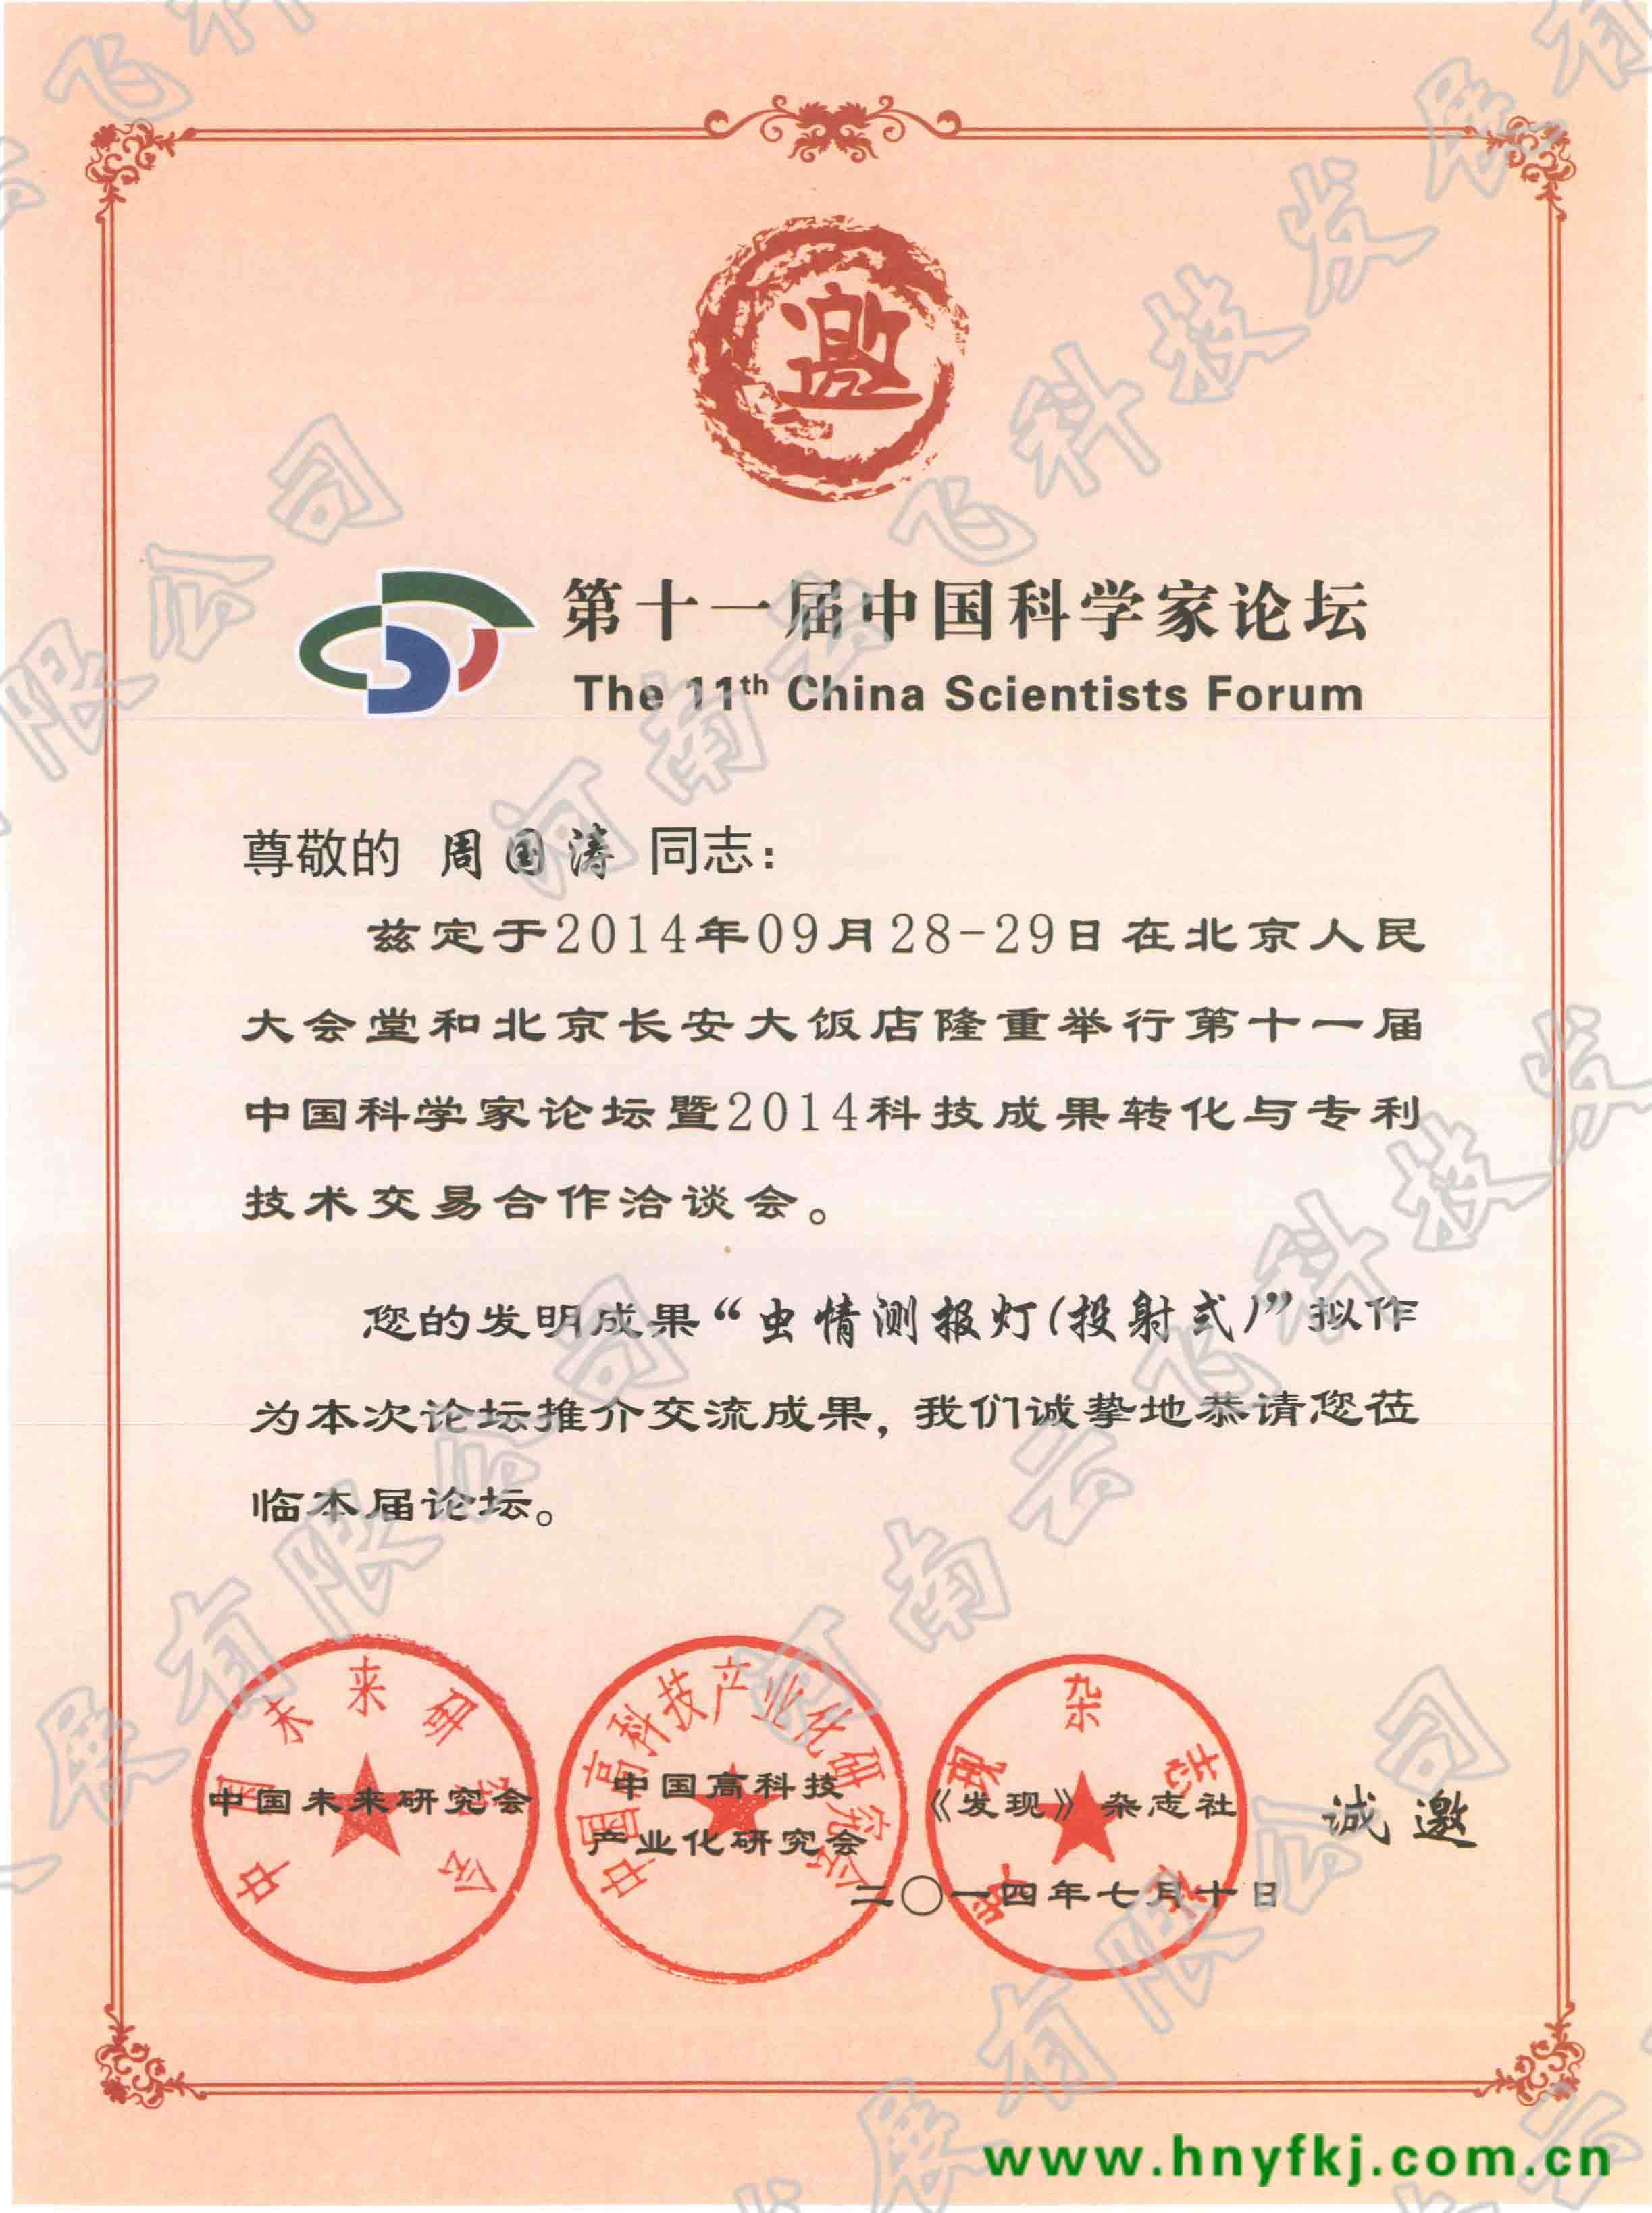 深圳天辰注册科技发展有限公司应邀出席“第十一届中国科学家论坛”